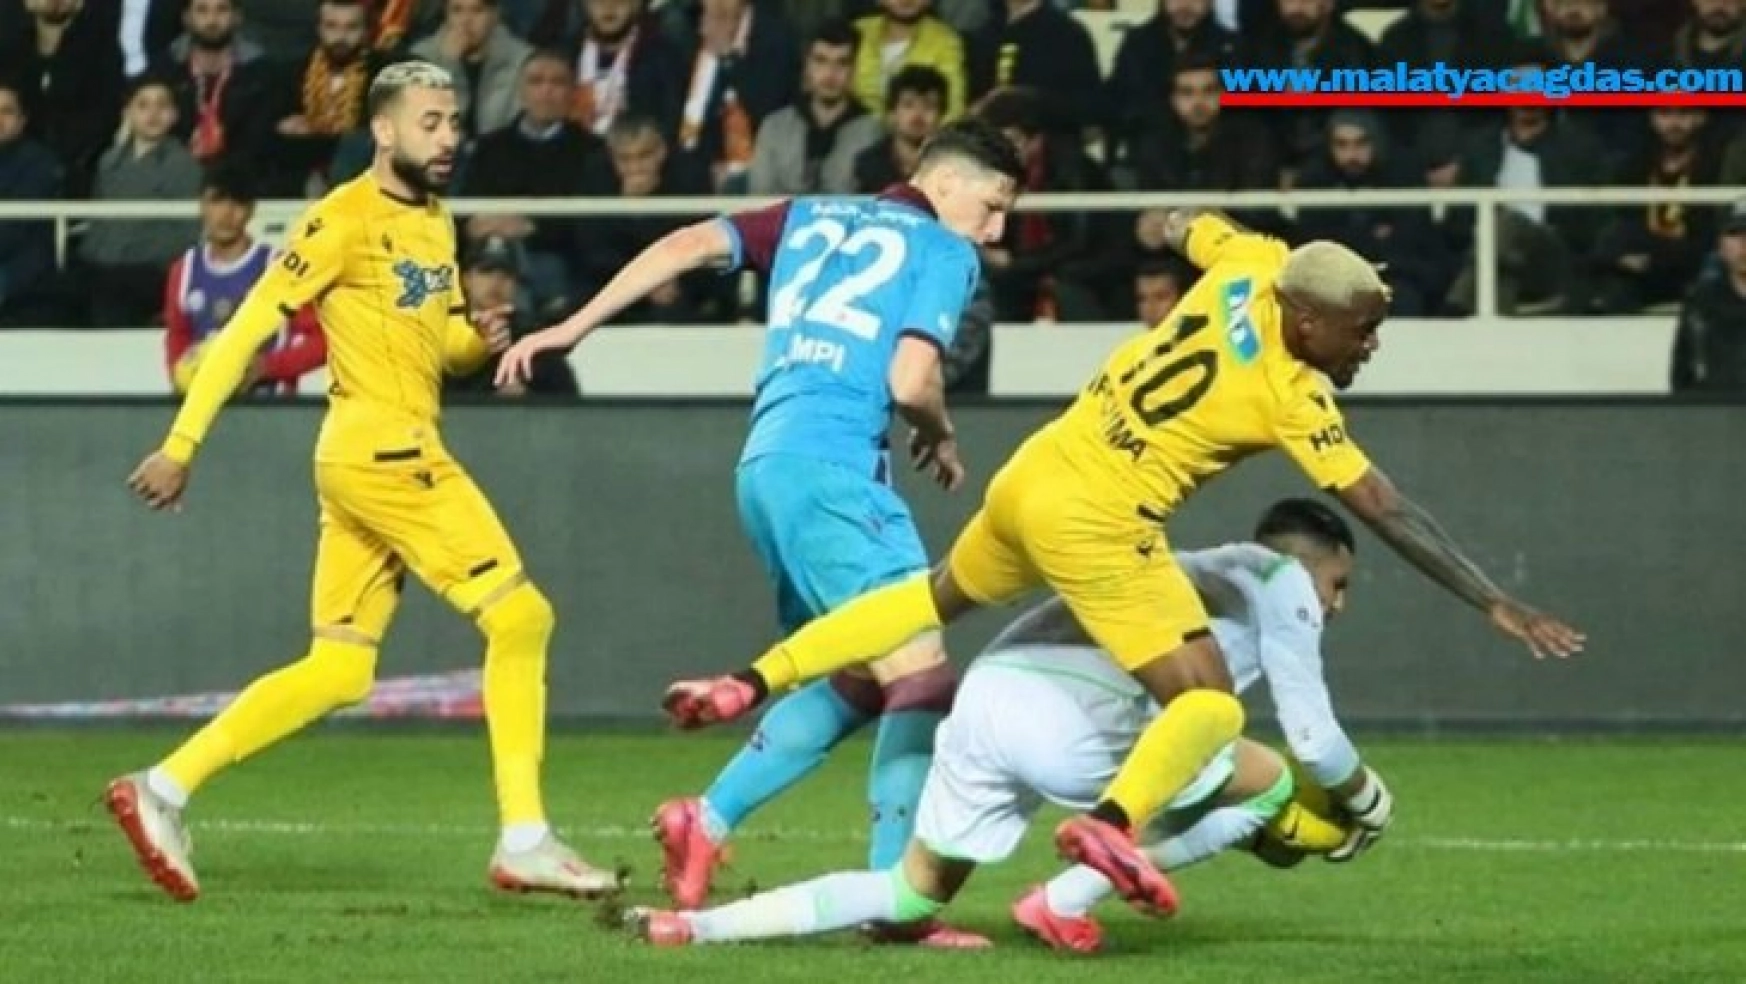 Yeni Malatyaspor kulüp tarihinin en kötü sezonunu yaşıyor